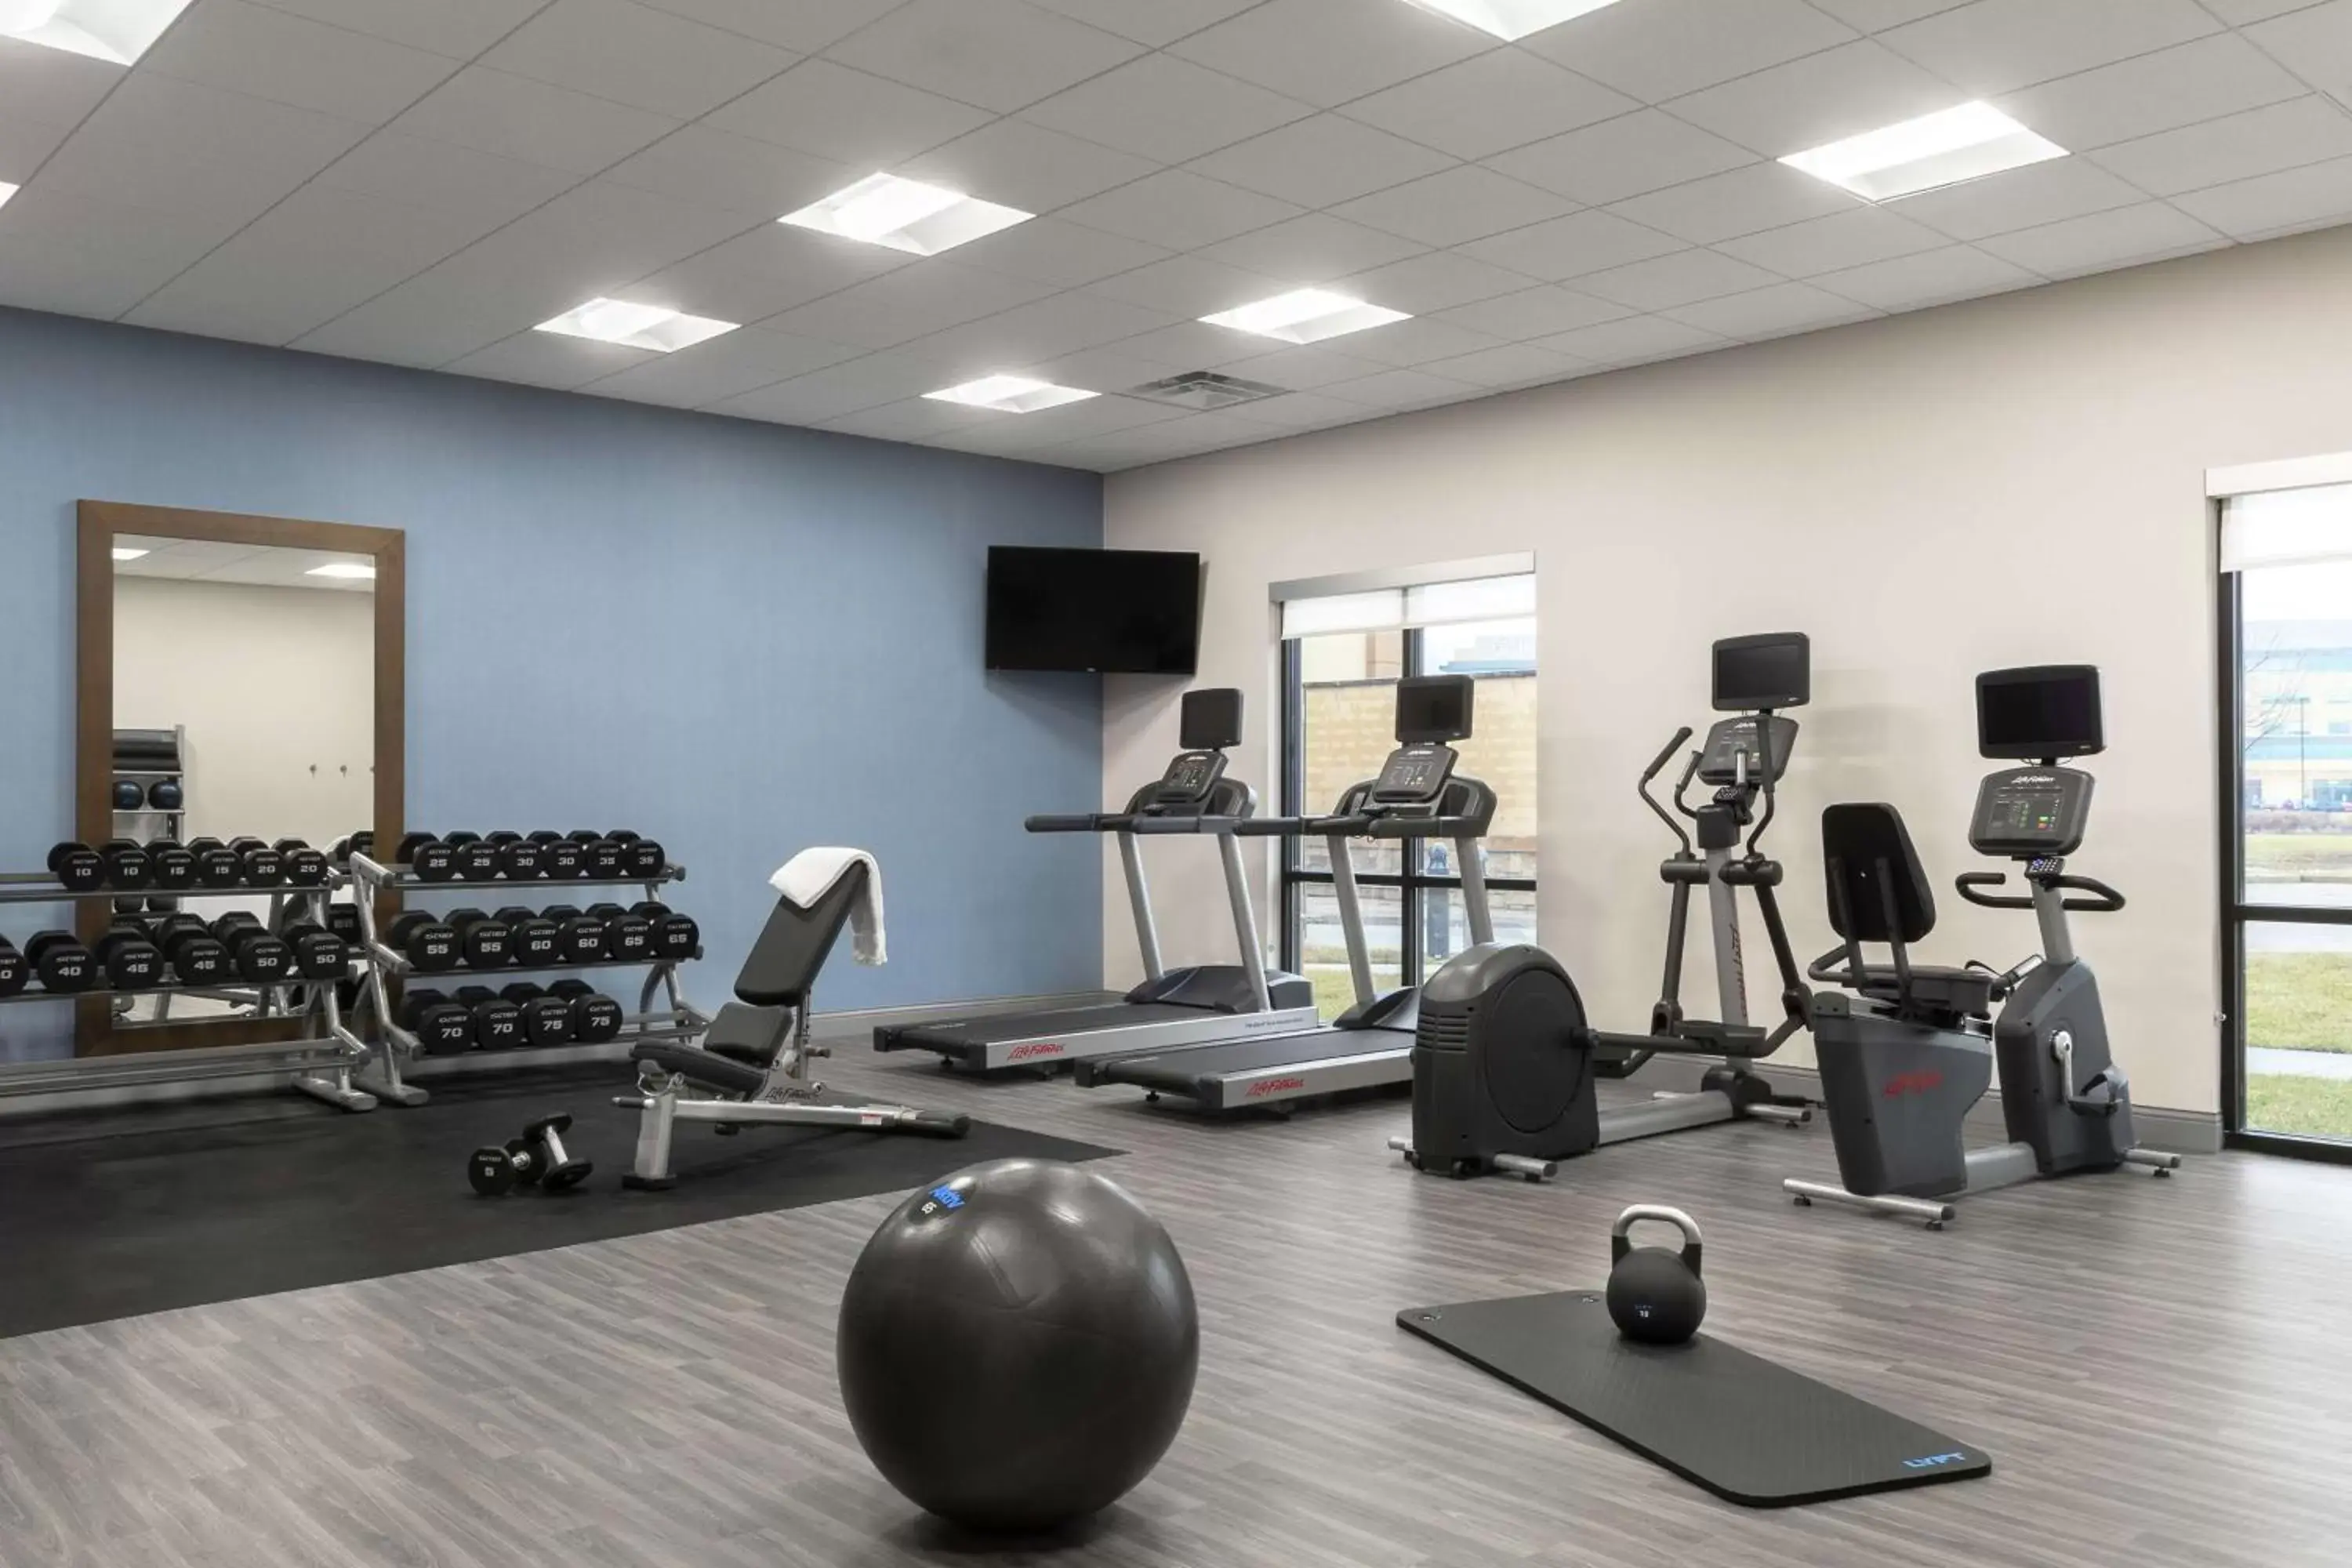 Fitness centre/facilities, Fitness Center/Facilities in Hampton Inn O'Fallon, Il